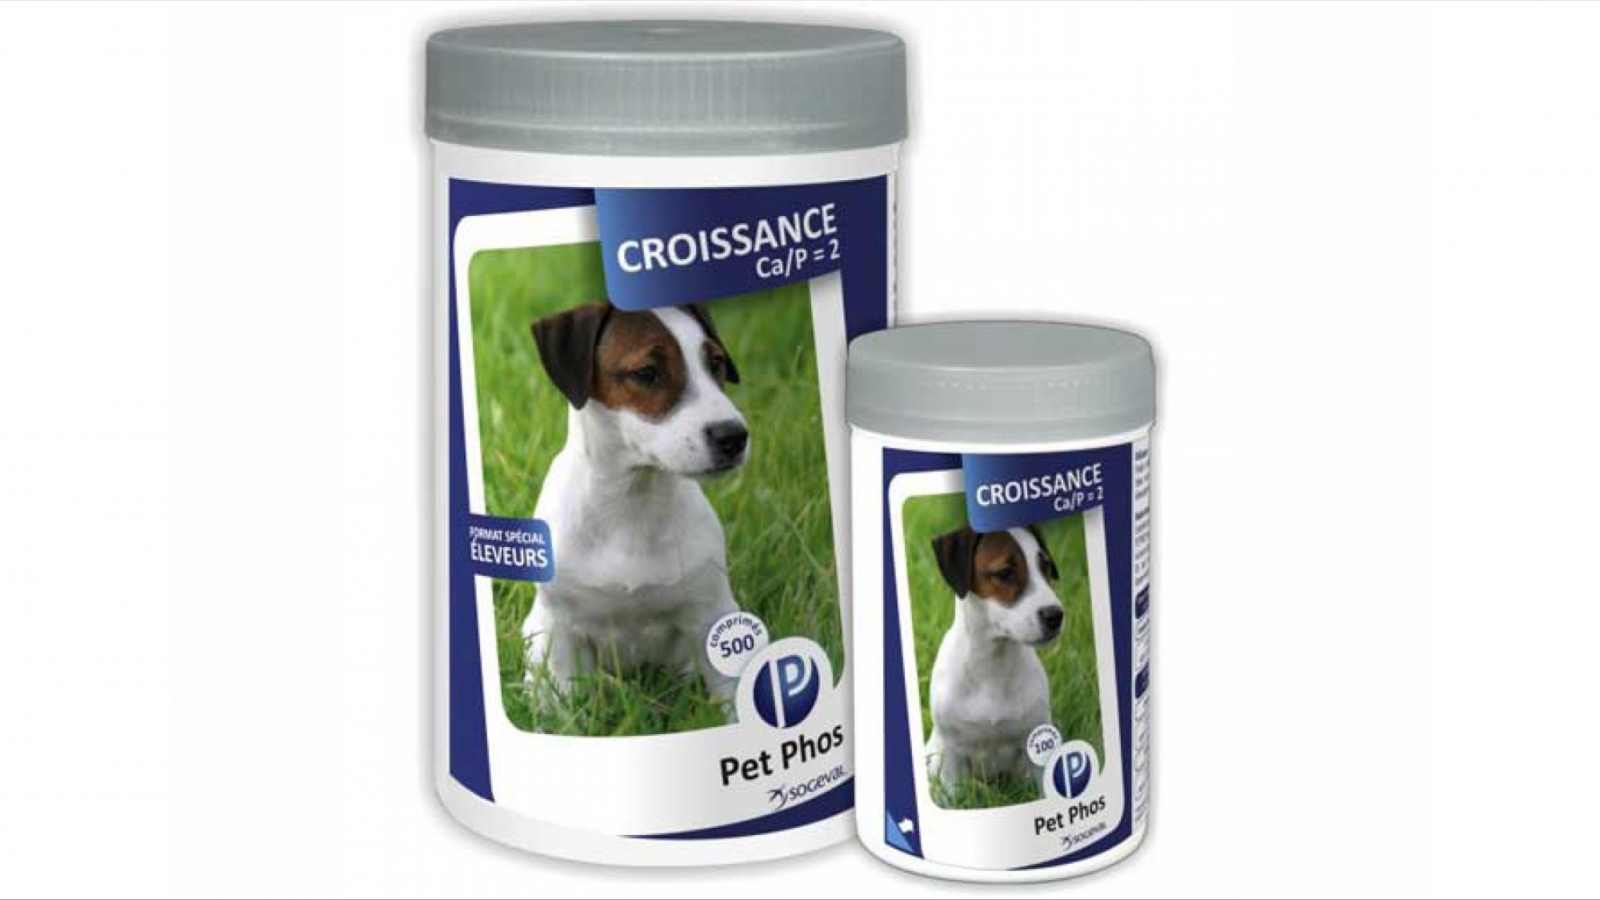 Suplimente nutritive - Pet Phos Croissance CA/P2 100 tablete, magazindeanimale.ro